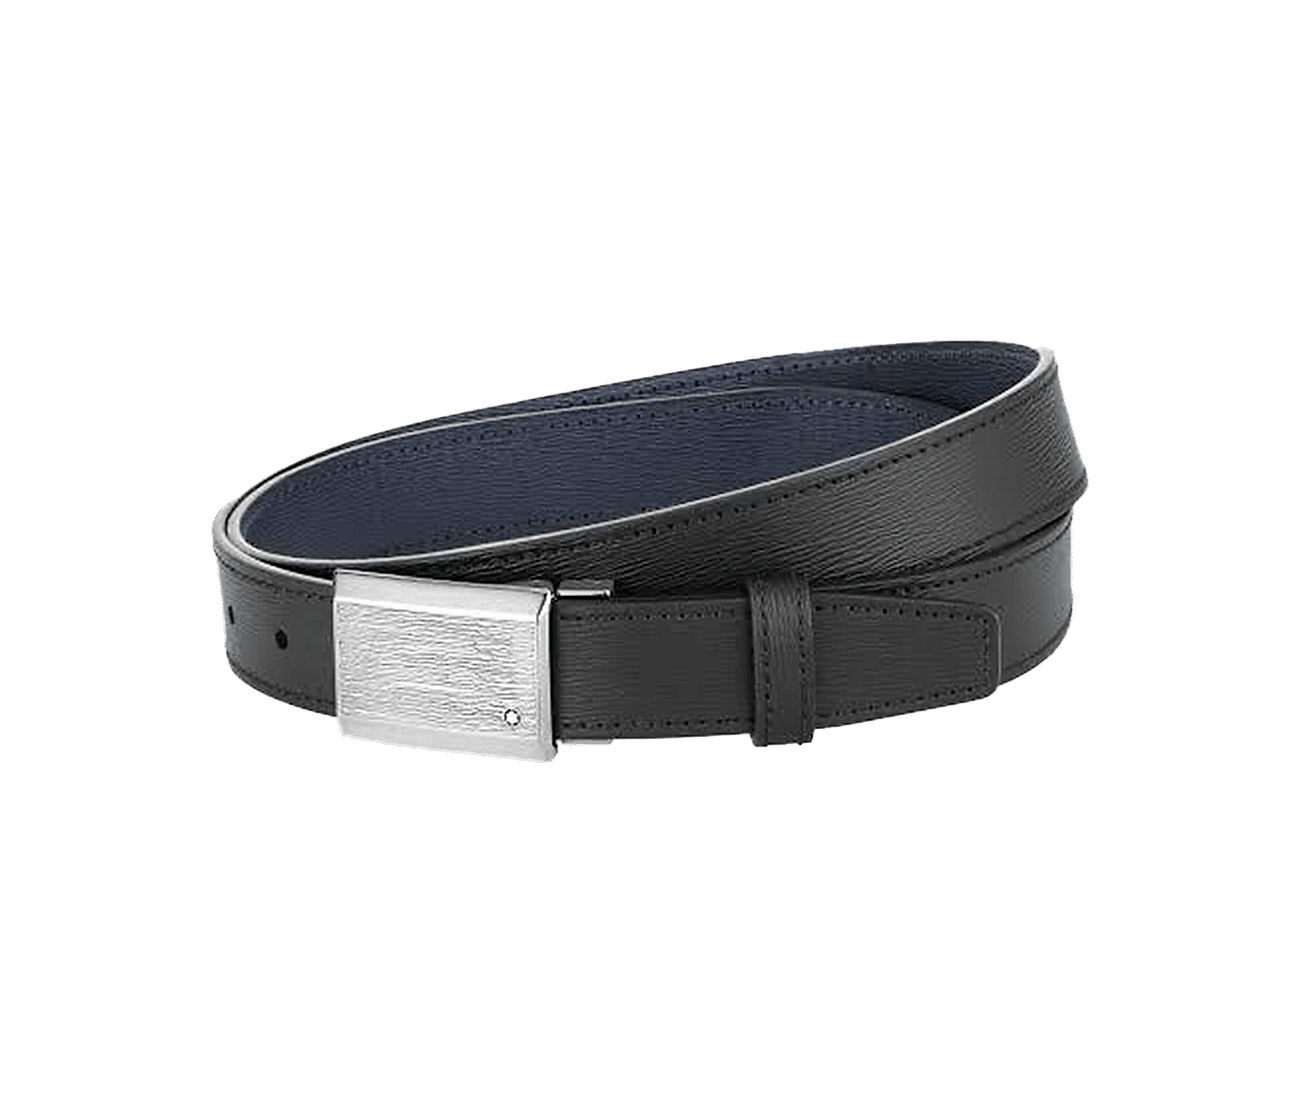 Black/blue 30 mm reversible leather belt